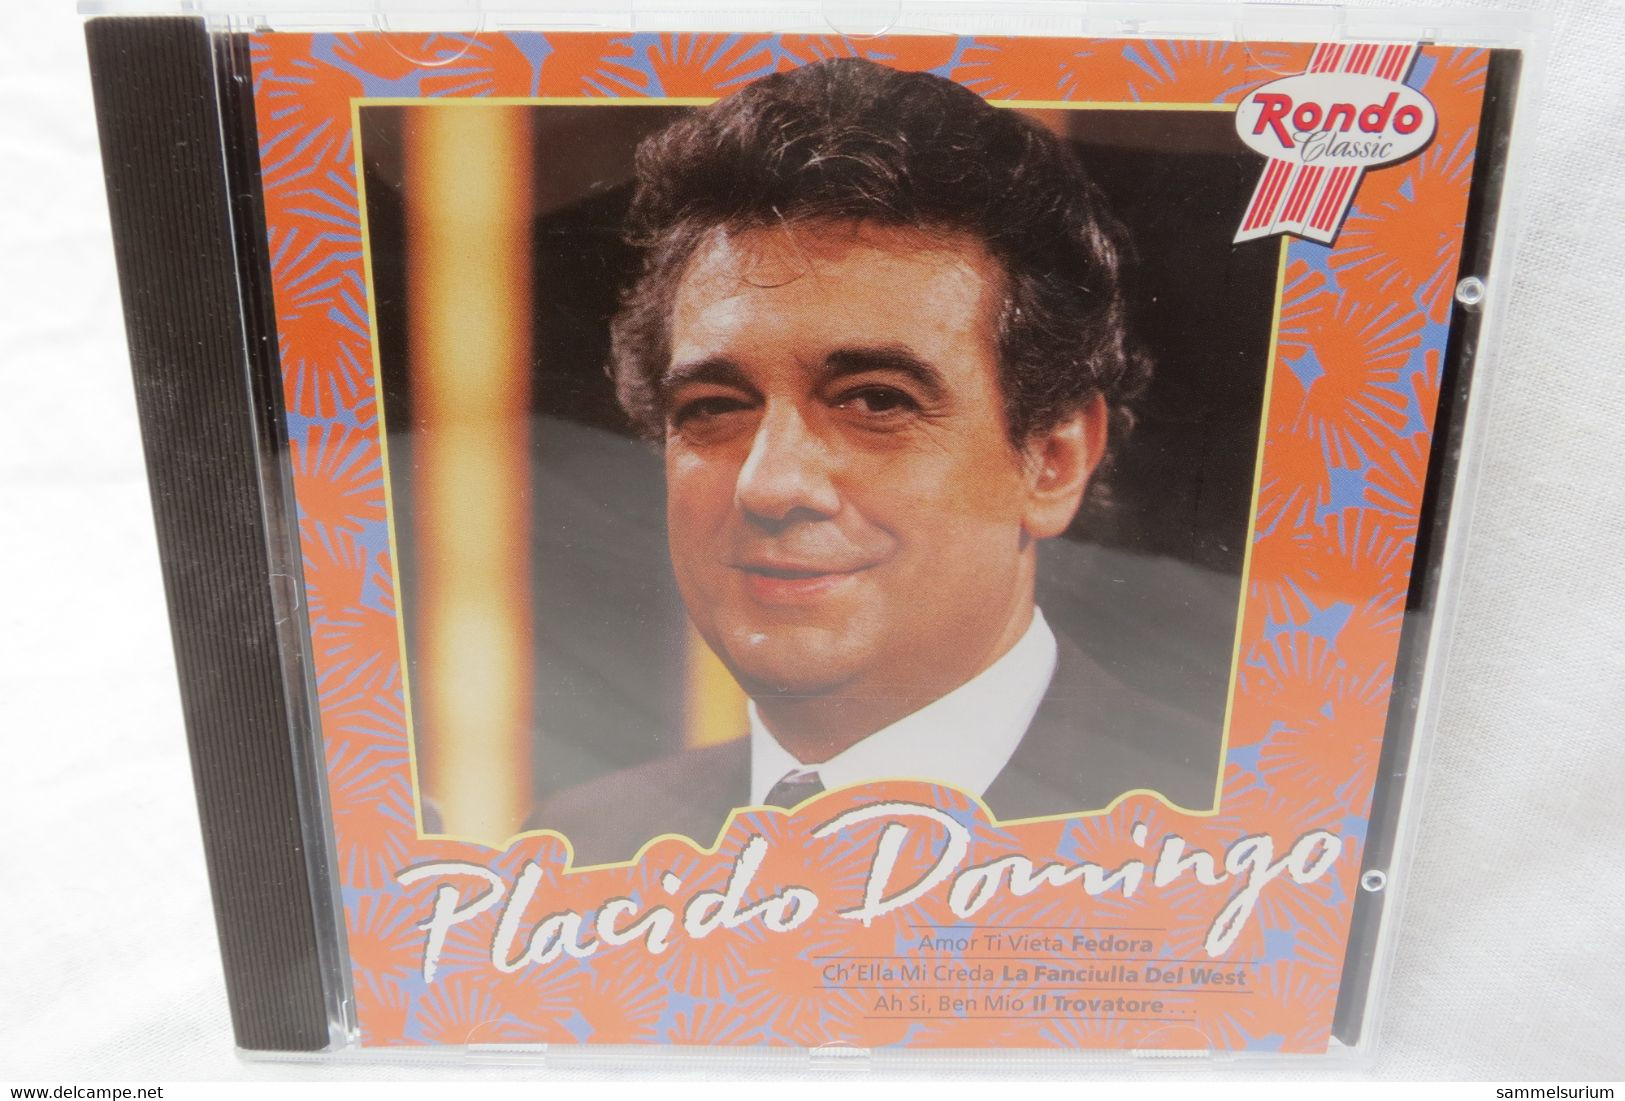 CD "Placido Domingo" Placido Domingo - Oper & Operette